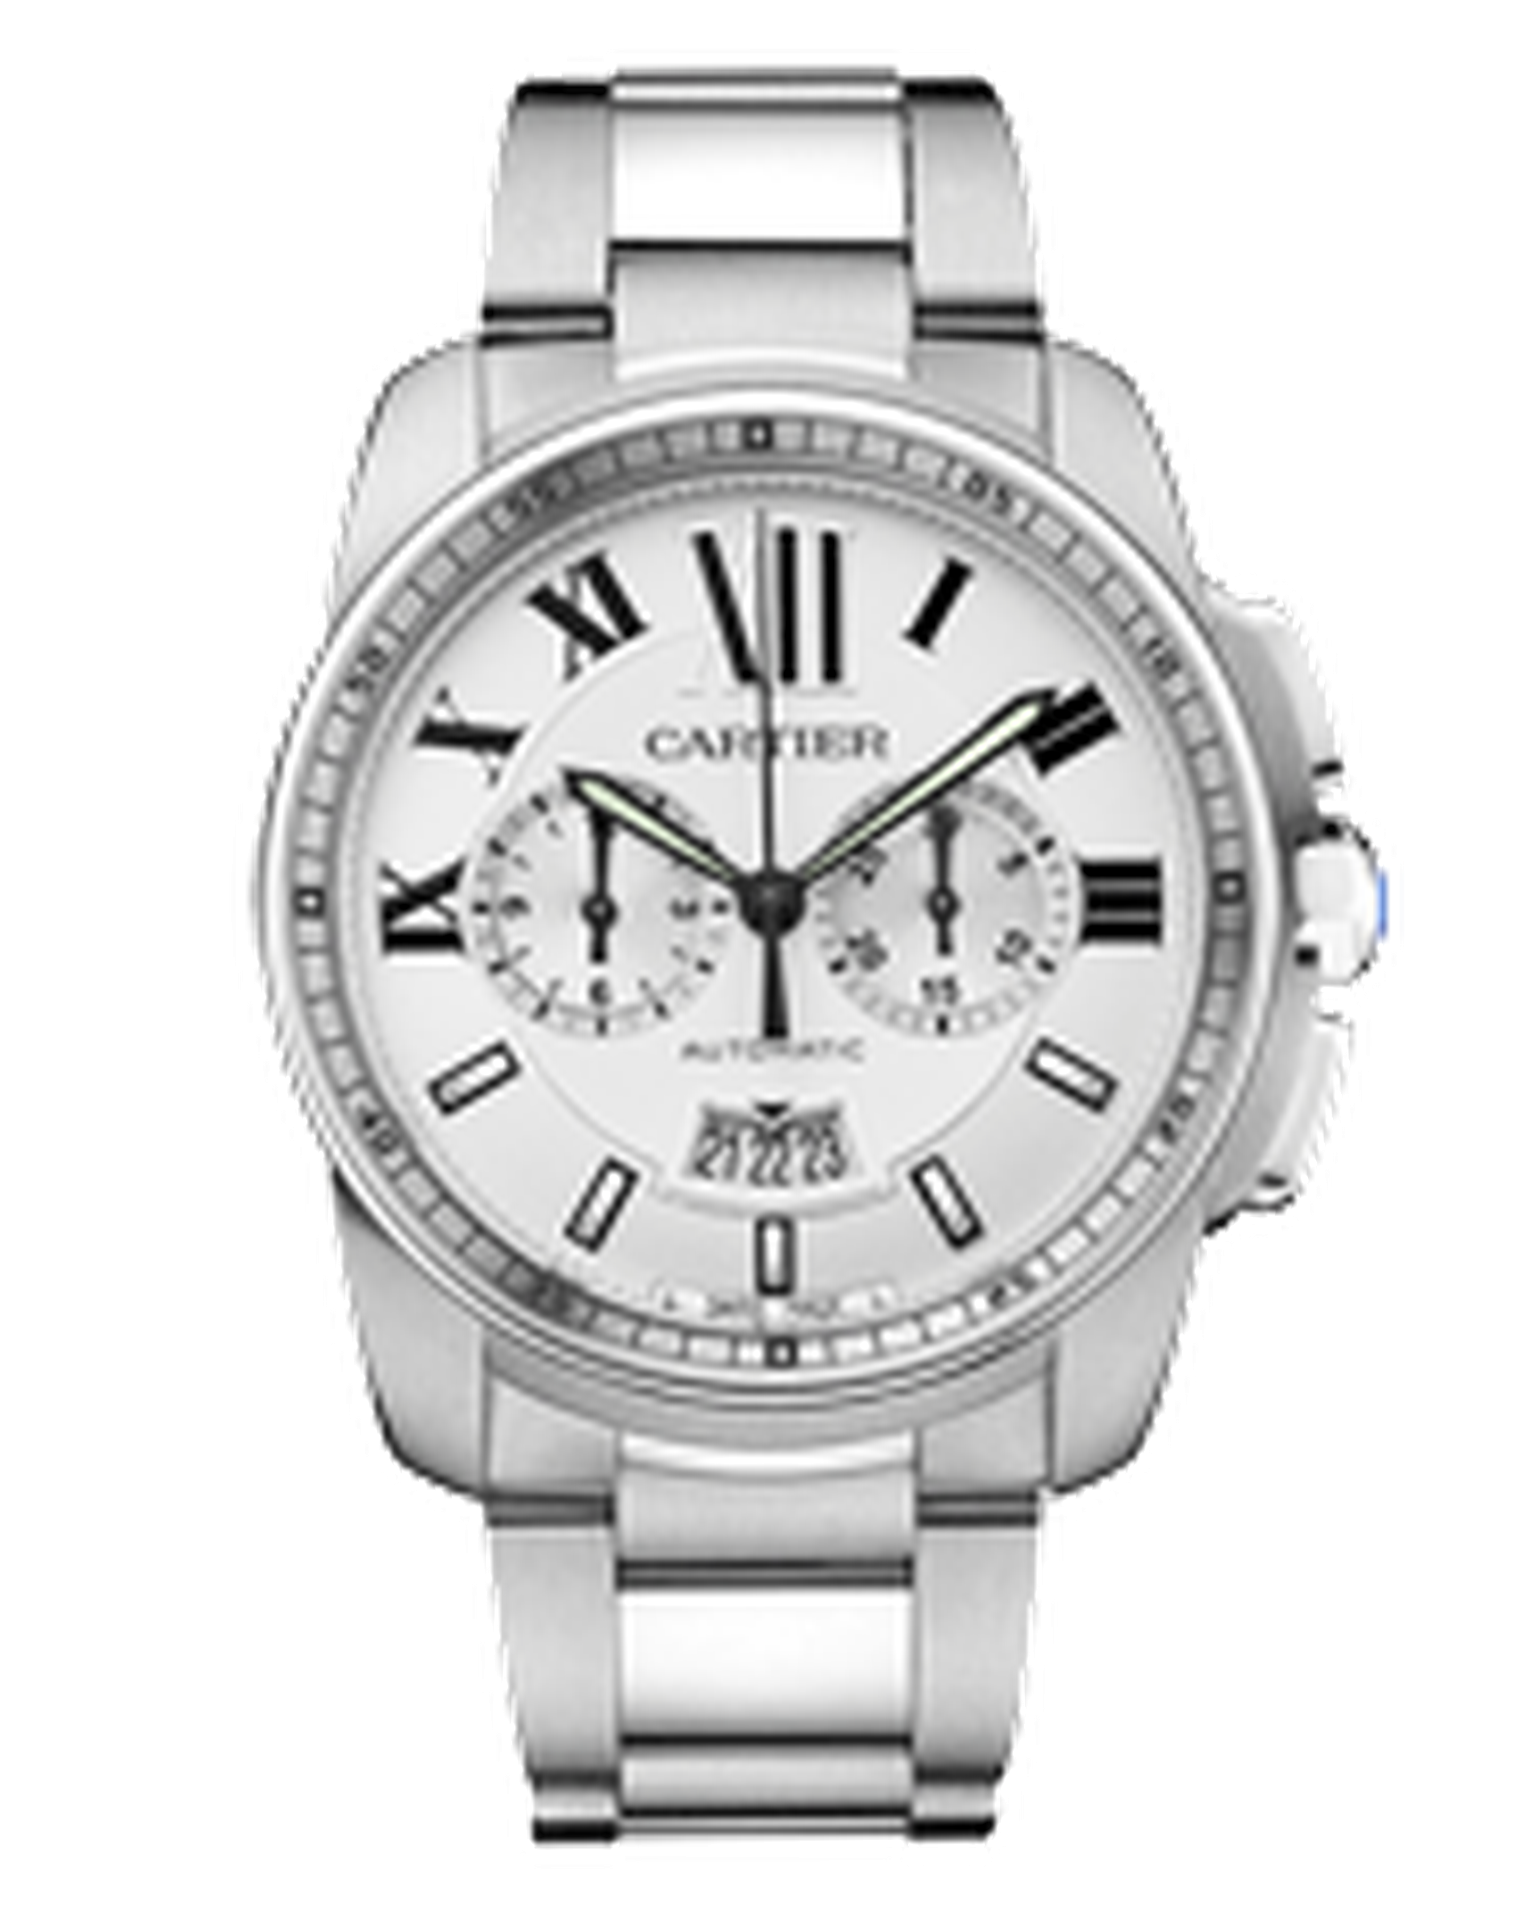 Calibre de Cartier Chronograph watch_20130418_Thumbnail